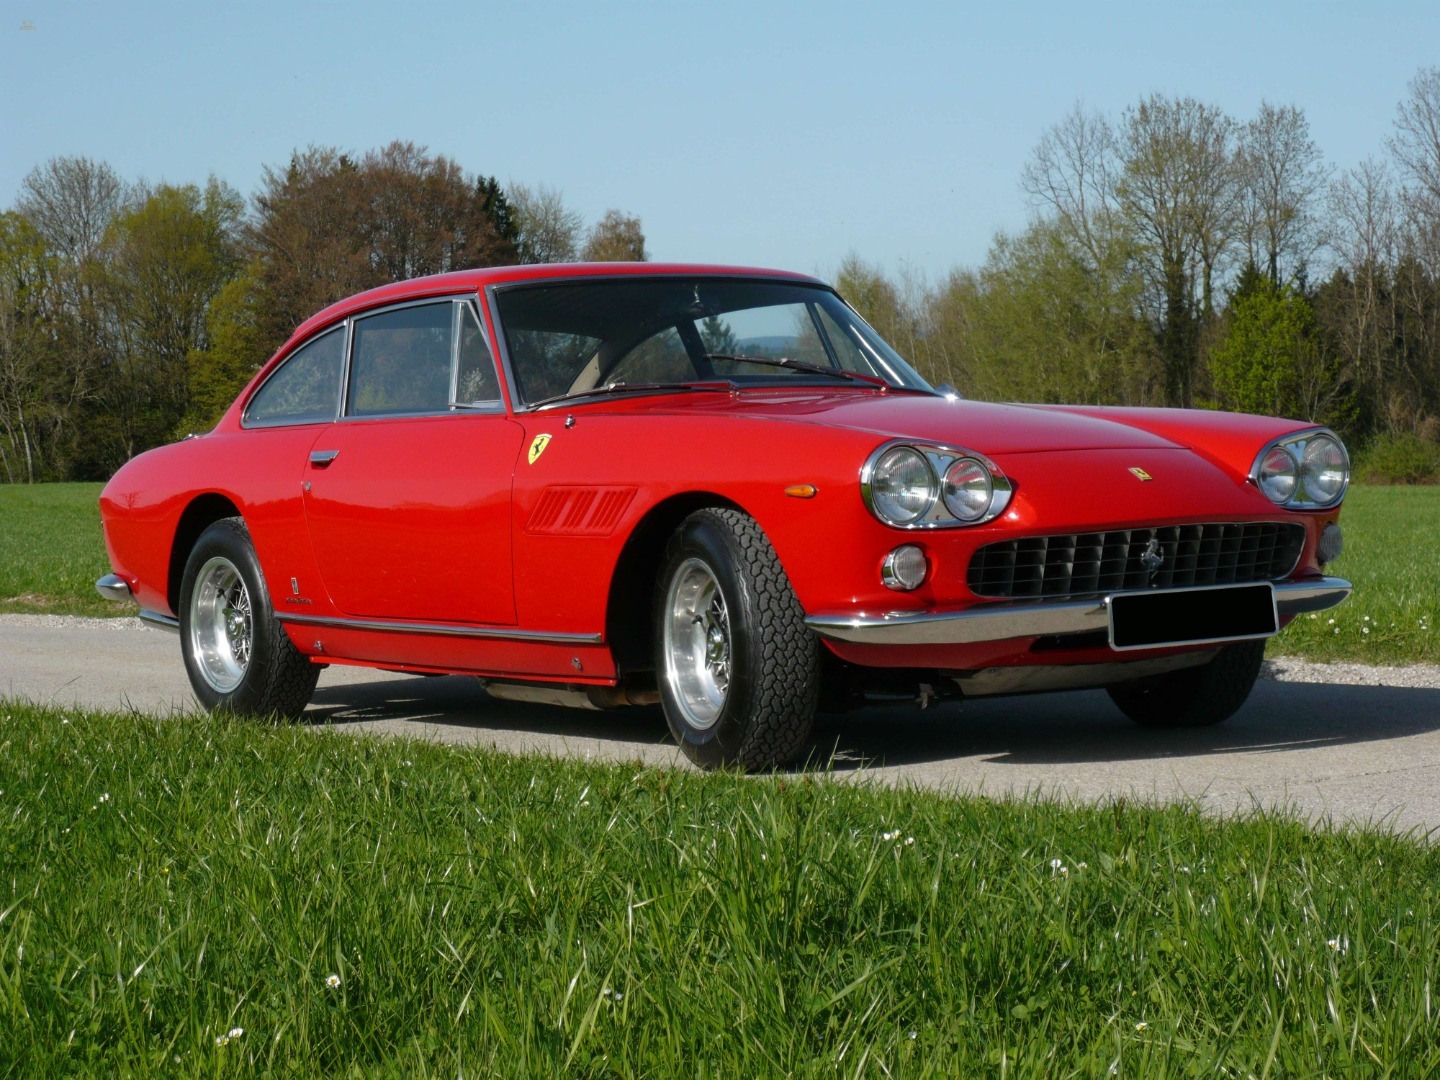 car-16640-Ferrari3304.jpg